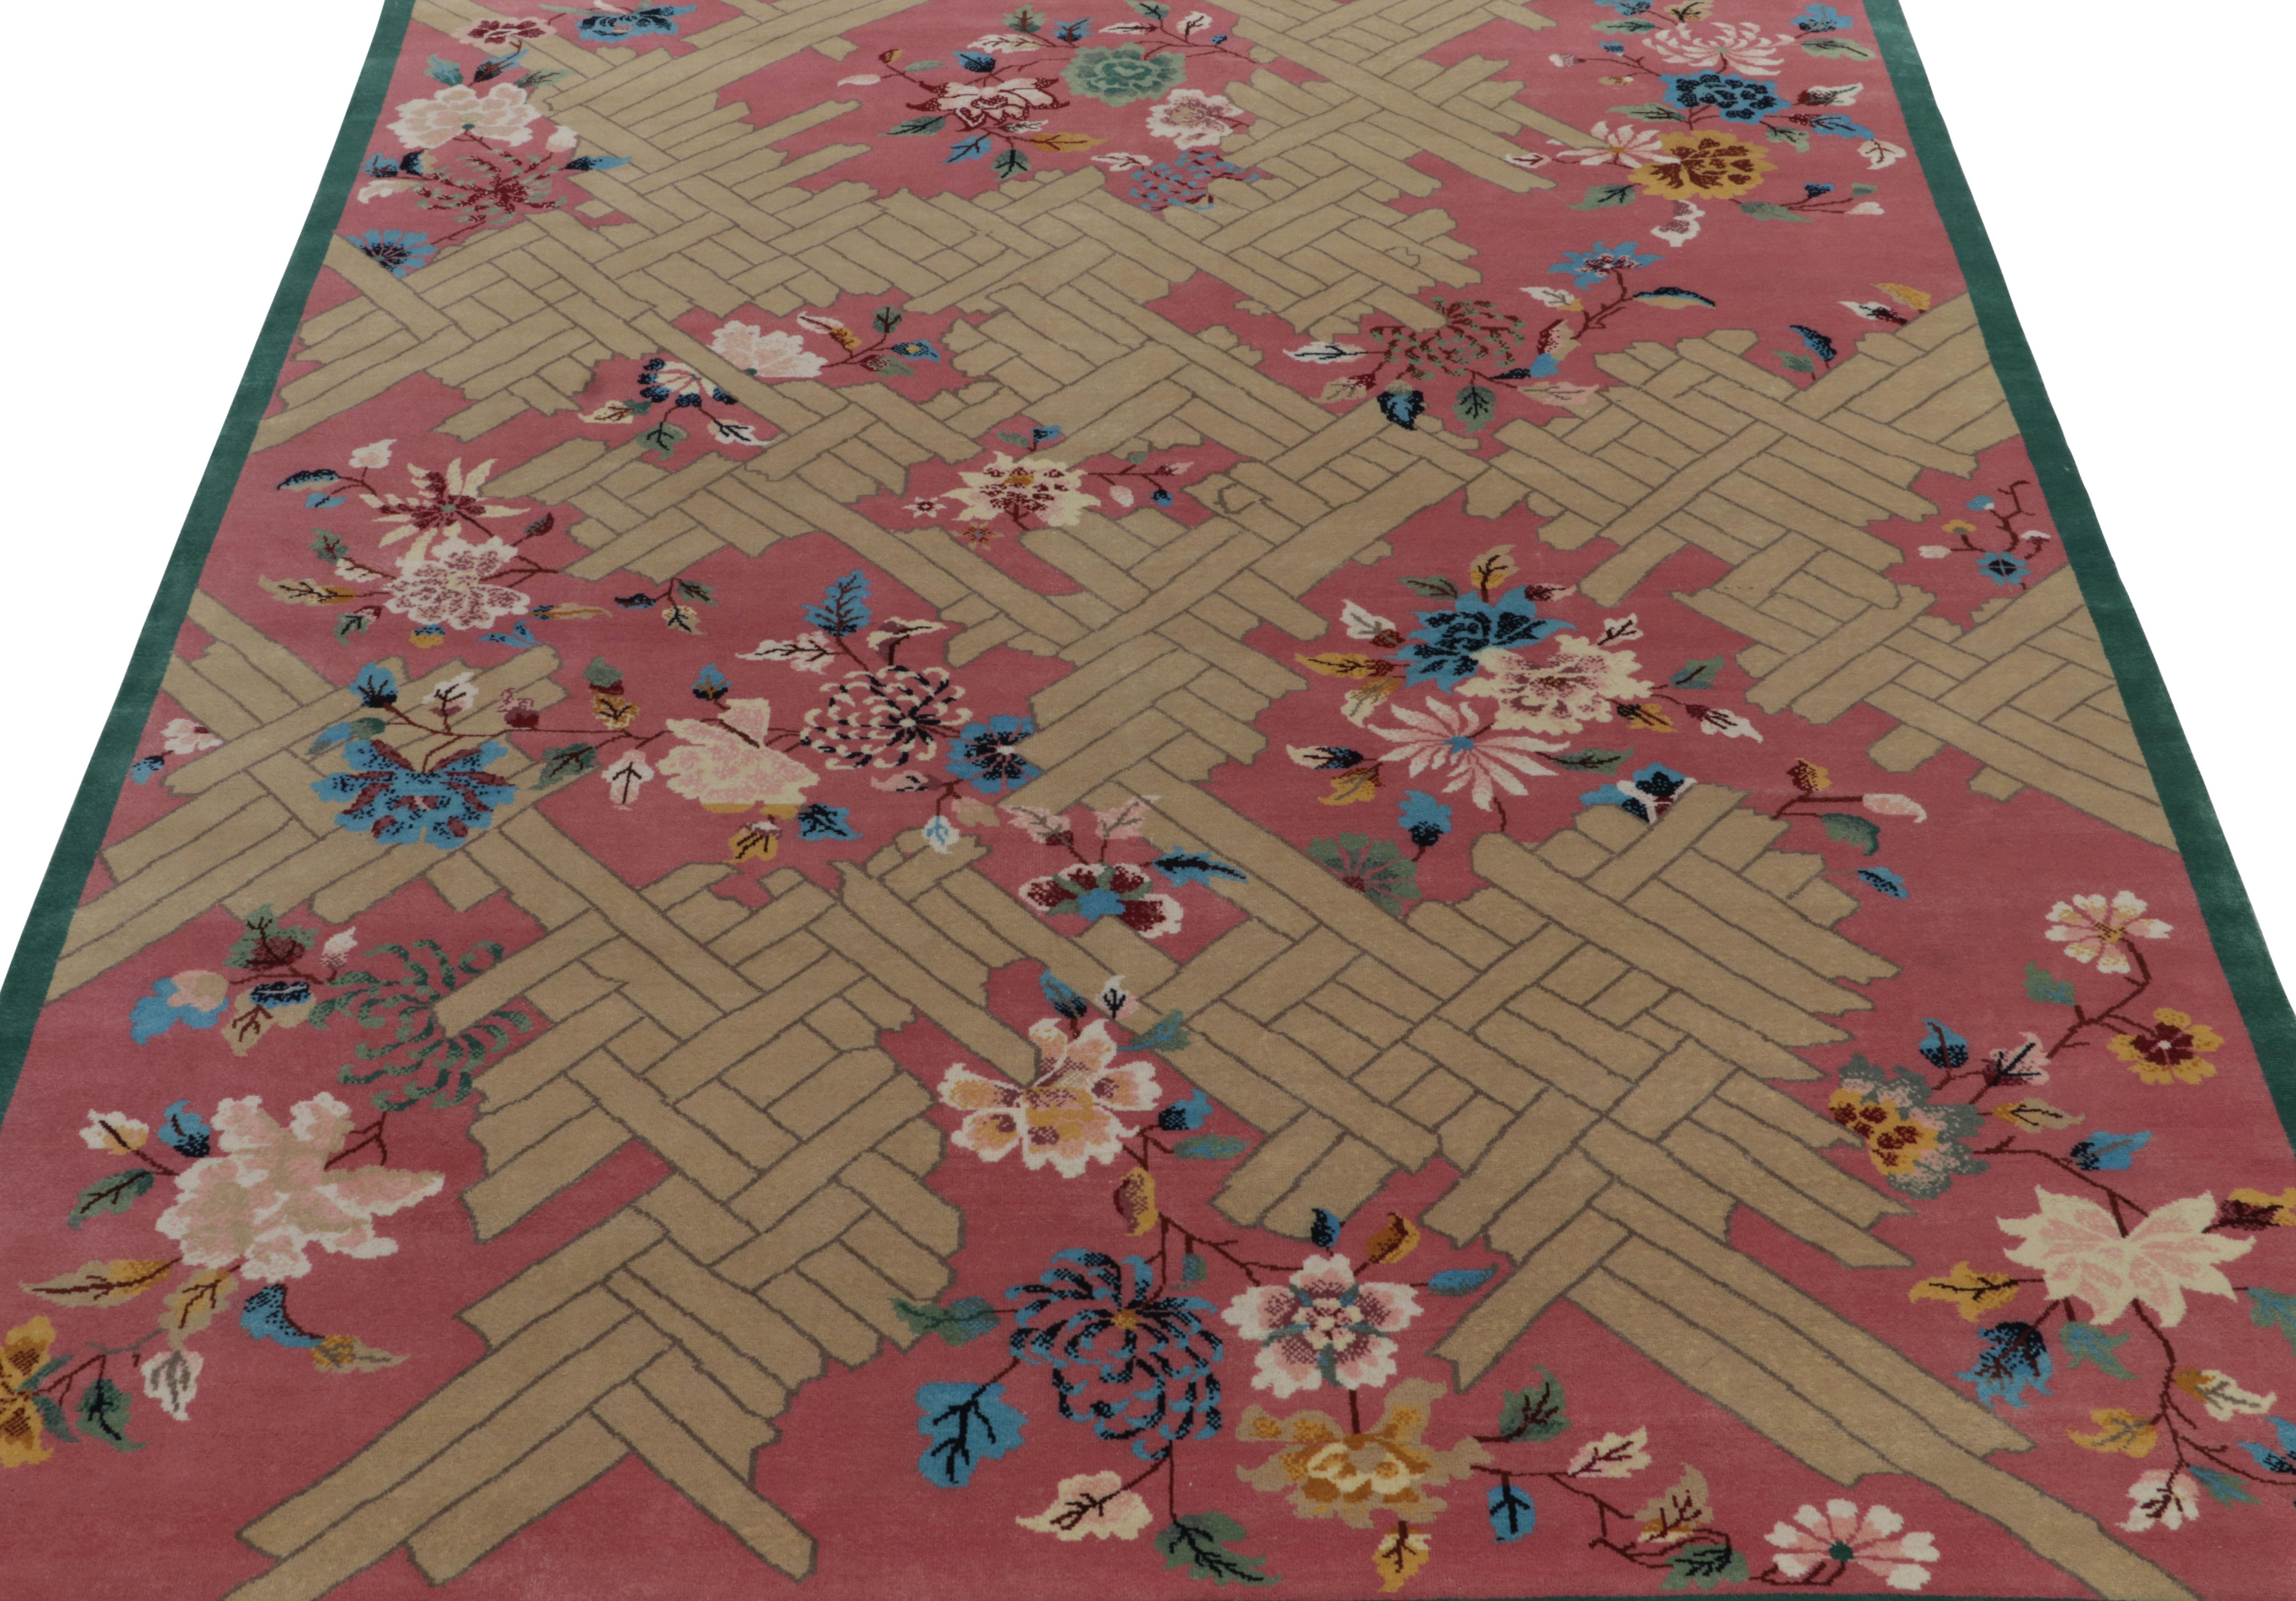 Chinesischer Teppich im Deko-Stil von Teppich & Kilims in Rosa, Beige und Blau mit Blumenmuster (Art déco) im Angebot